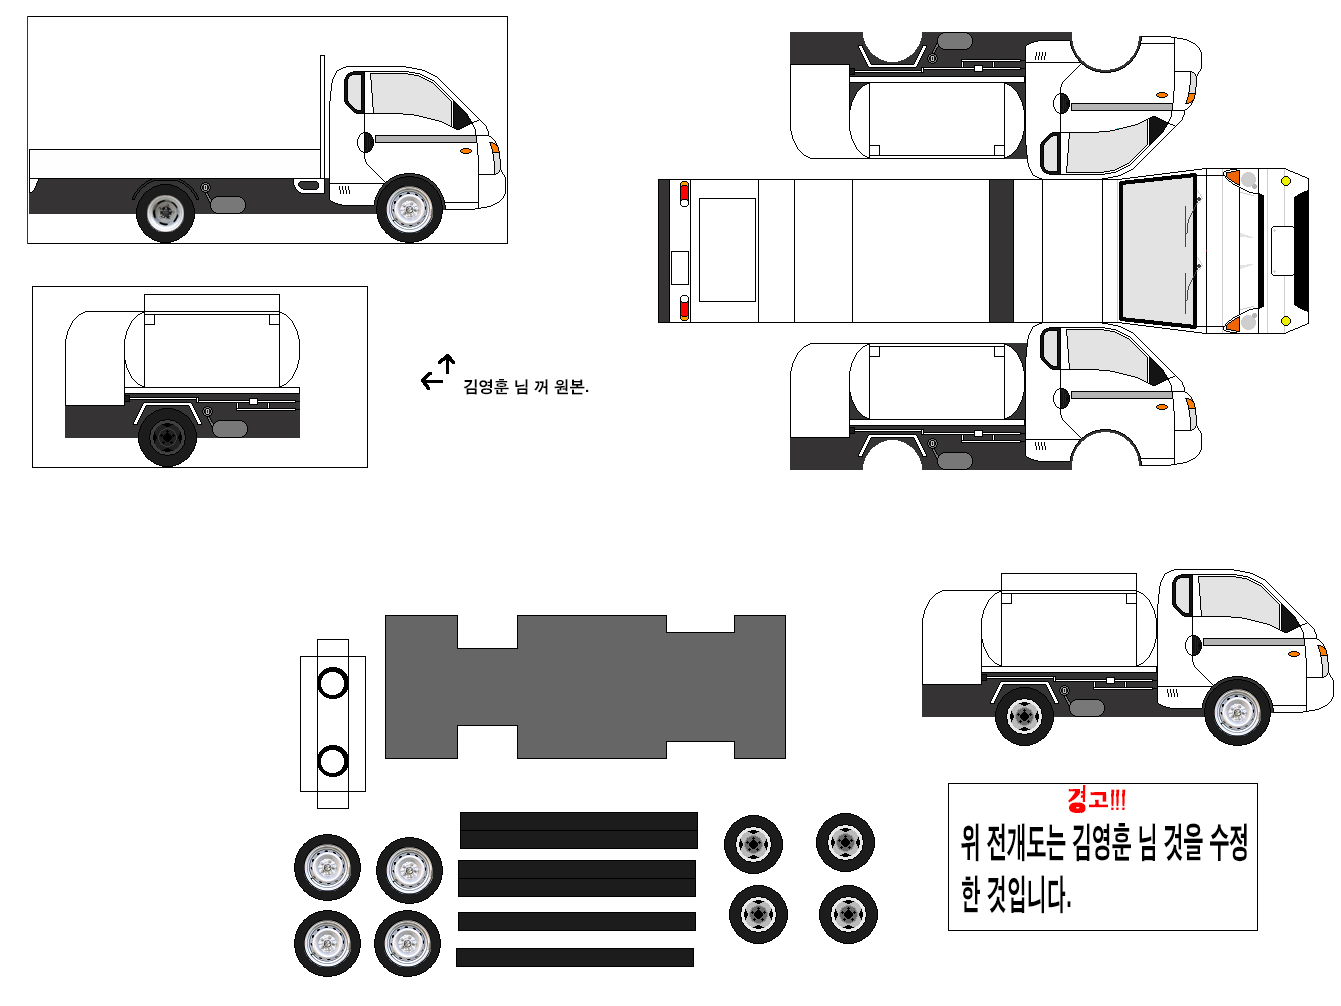 현대 포터2 초장축 슈퍼캐빈 카고트럭 유조차(2004_) 수정...3.jpg